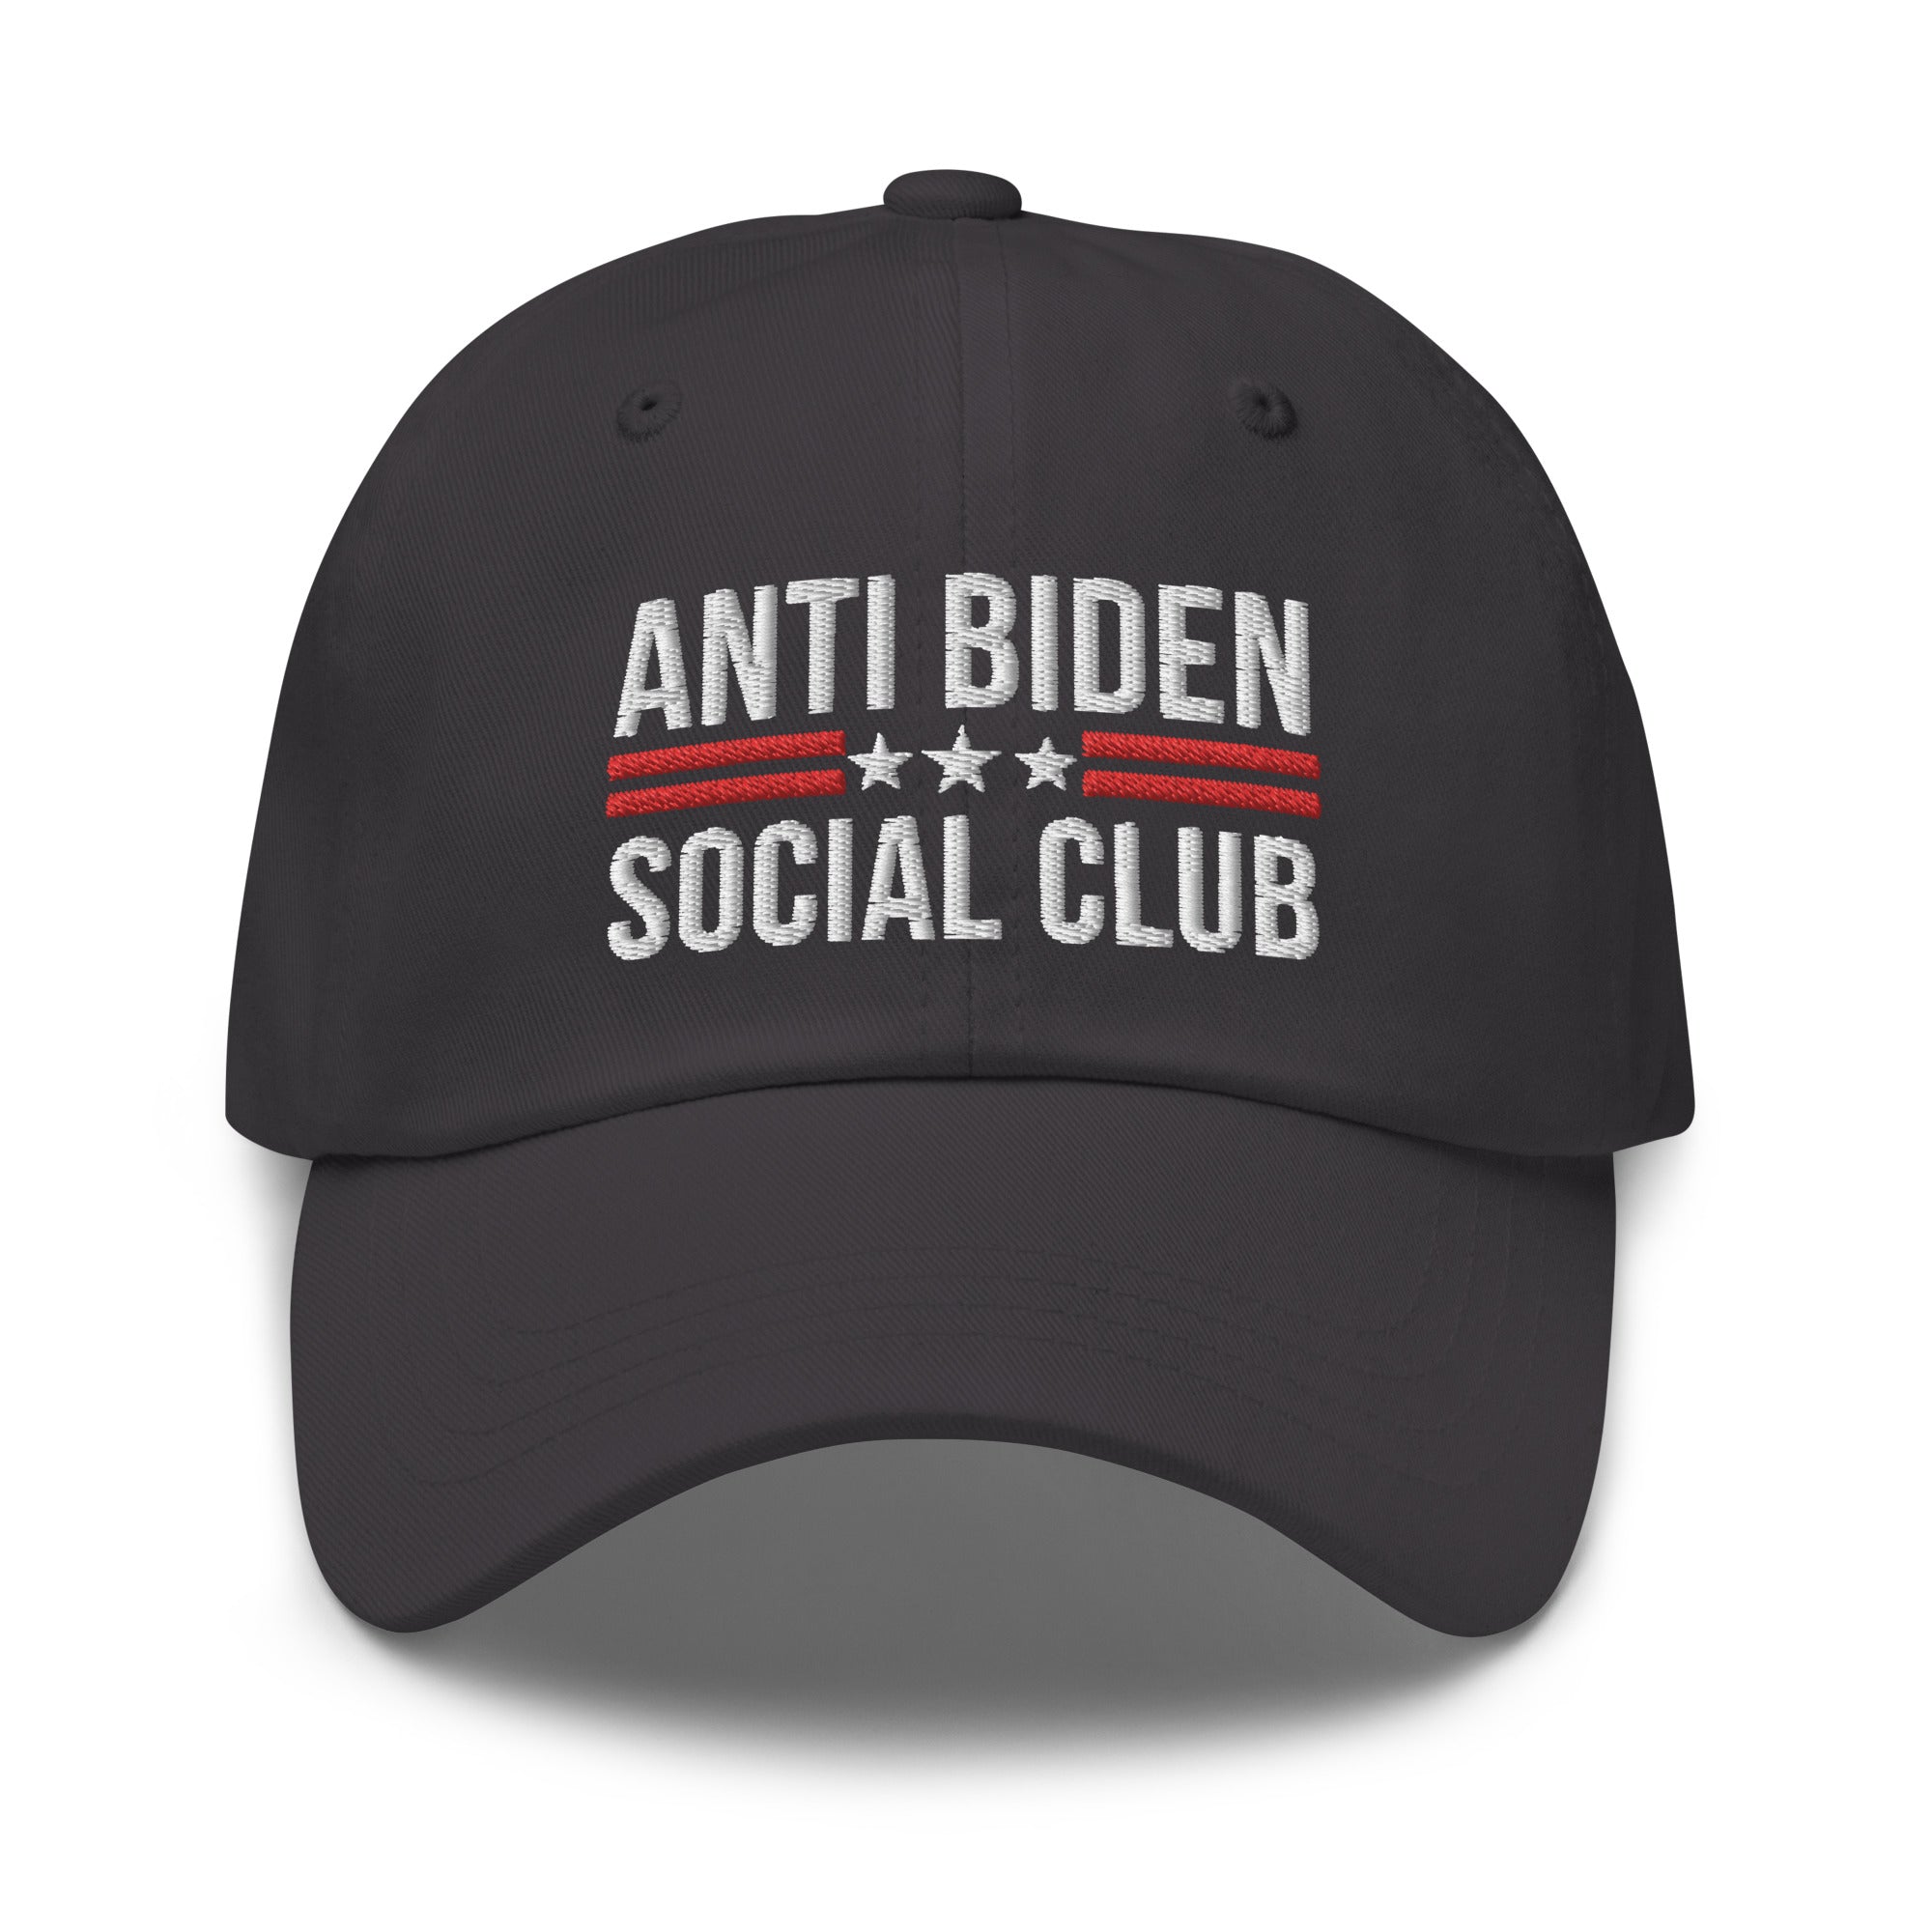 Anti Biden Social Club Dad Hat, FJB Hat, Conservative Hat, Republican Dad Cap, Impeach Biden, Biden Sucks, Anti Biden Hat - Madeinsea©